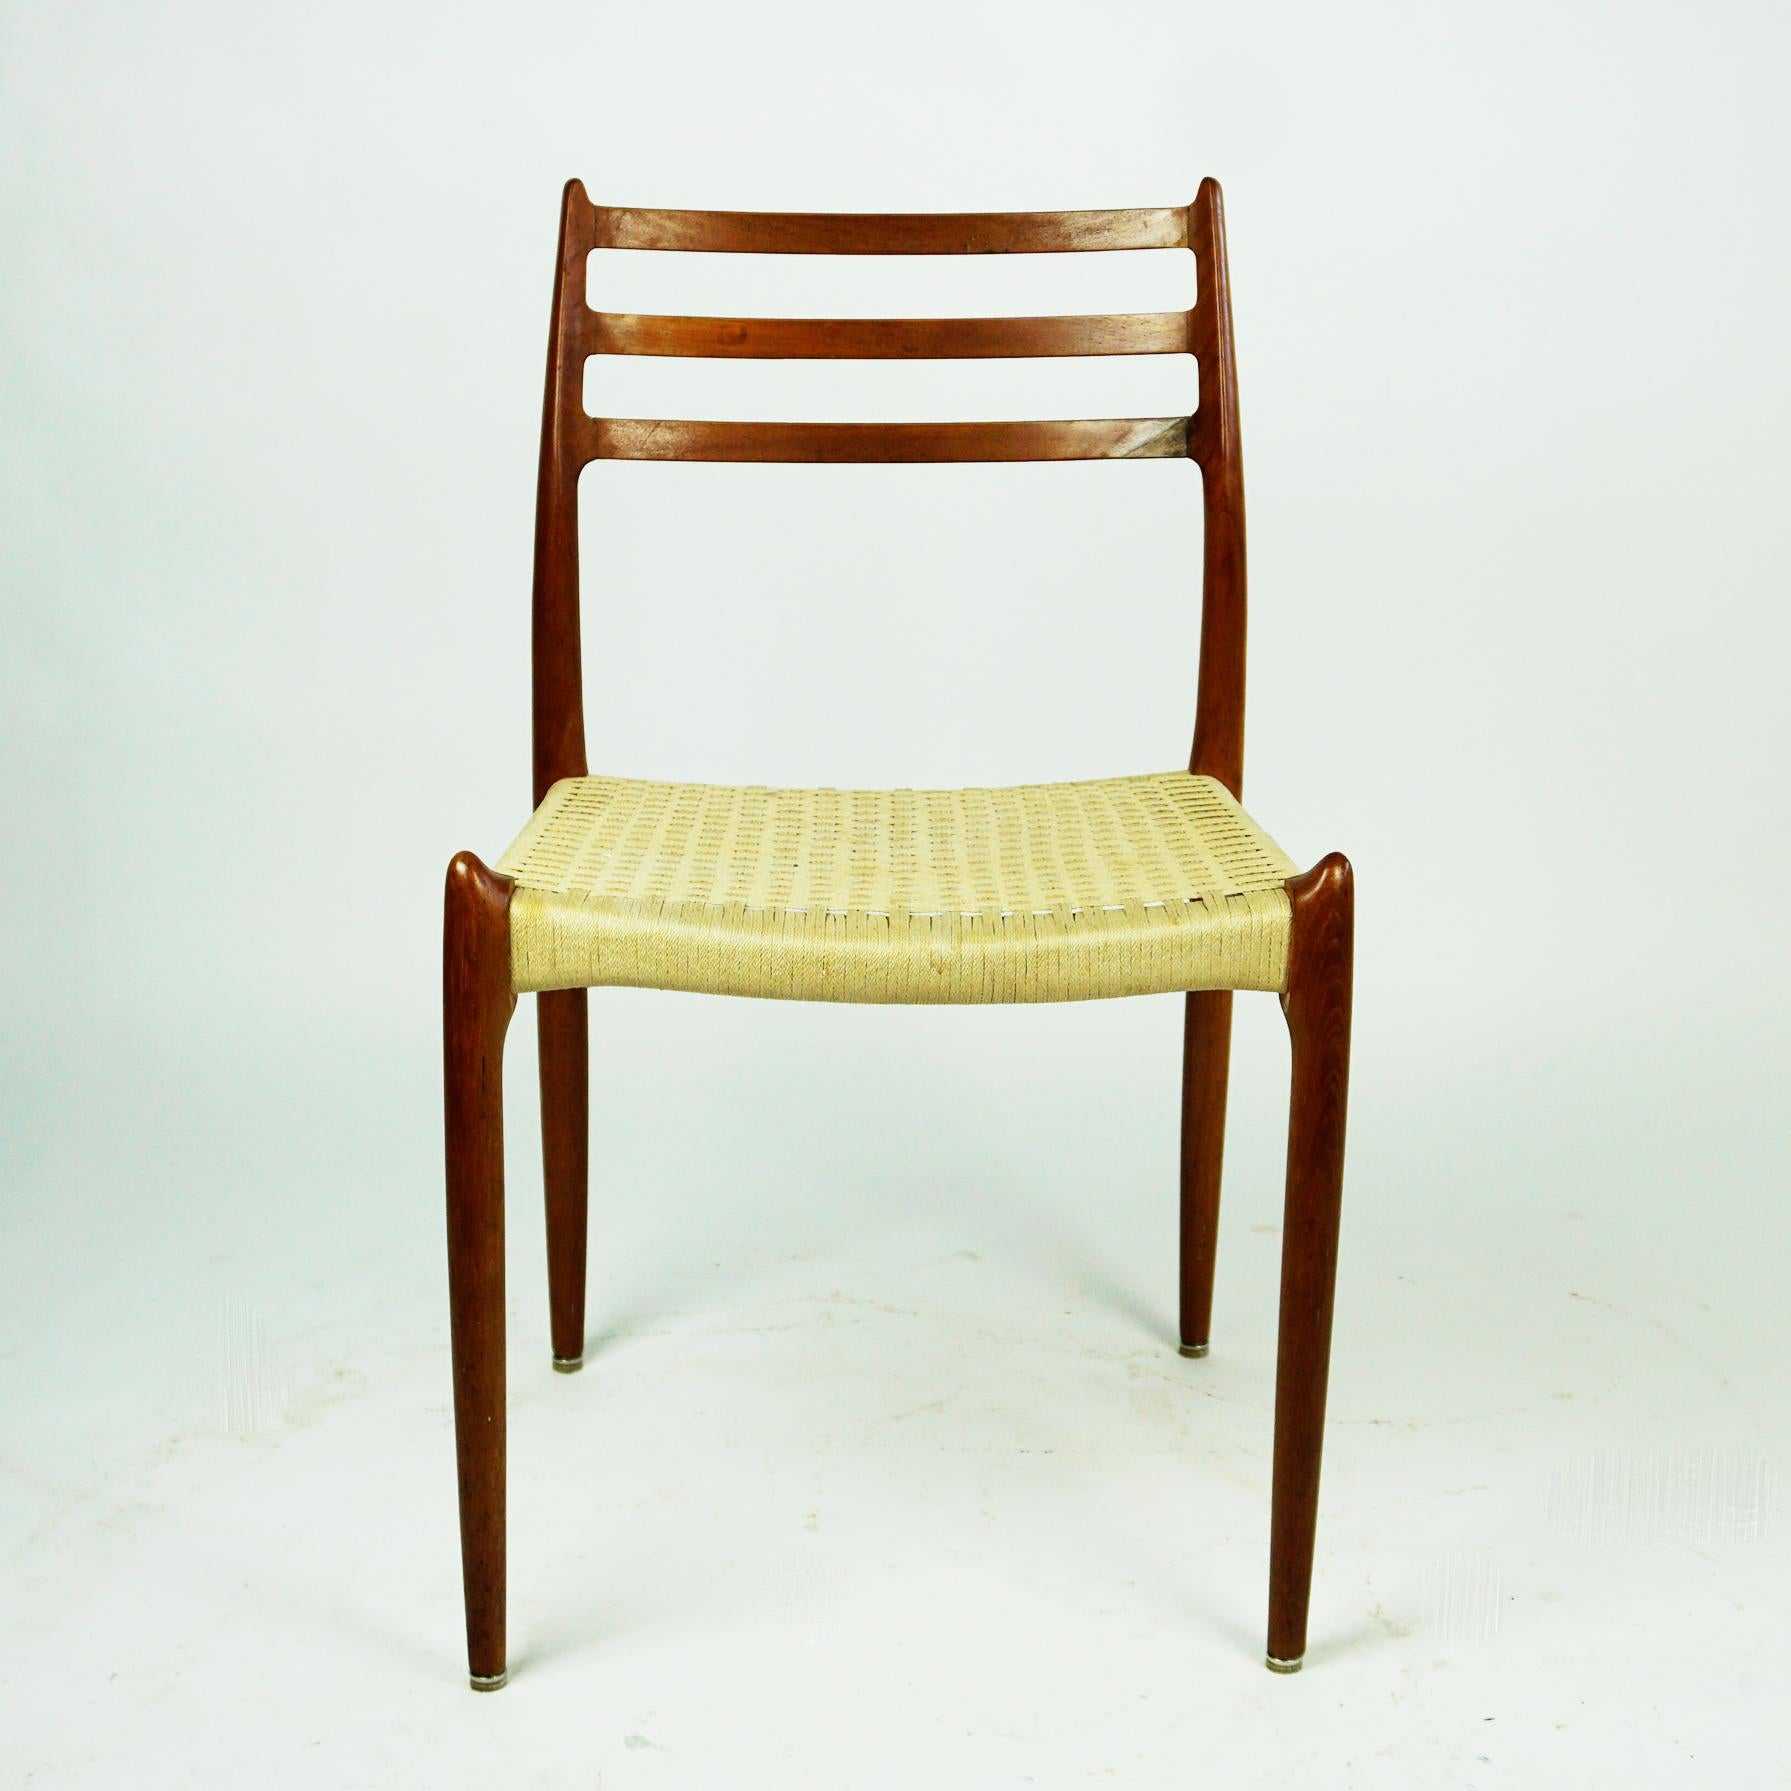 Ikone der dänischen Moderne Ein Paar Teakholz-Esszimmerstühle Mod. 78 mit Sitzflächen aus Textilkordel, entworfen von Niels Otto Moller im Jahr 1962 und hergestellt von J.L. Mollers Mobelfabrik in Dänemark. Frühe Produktion in sehr gutem